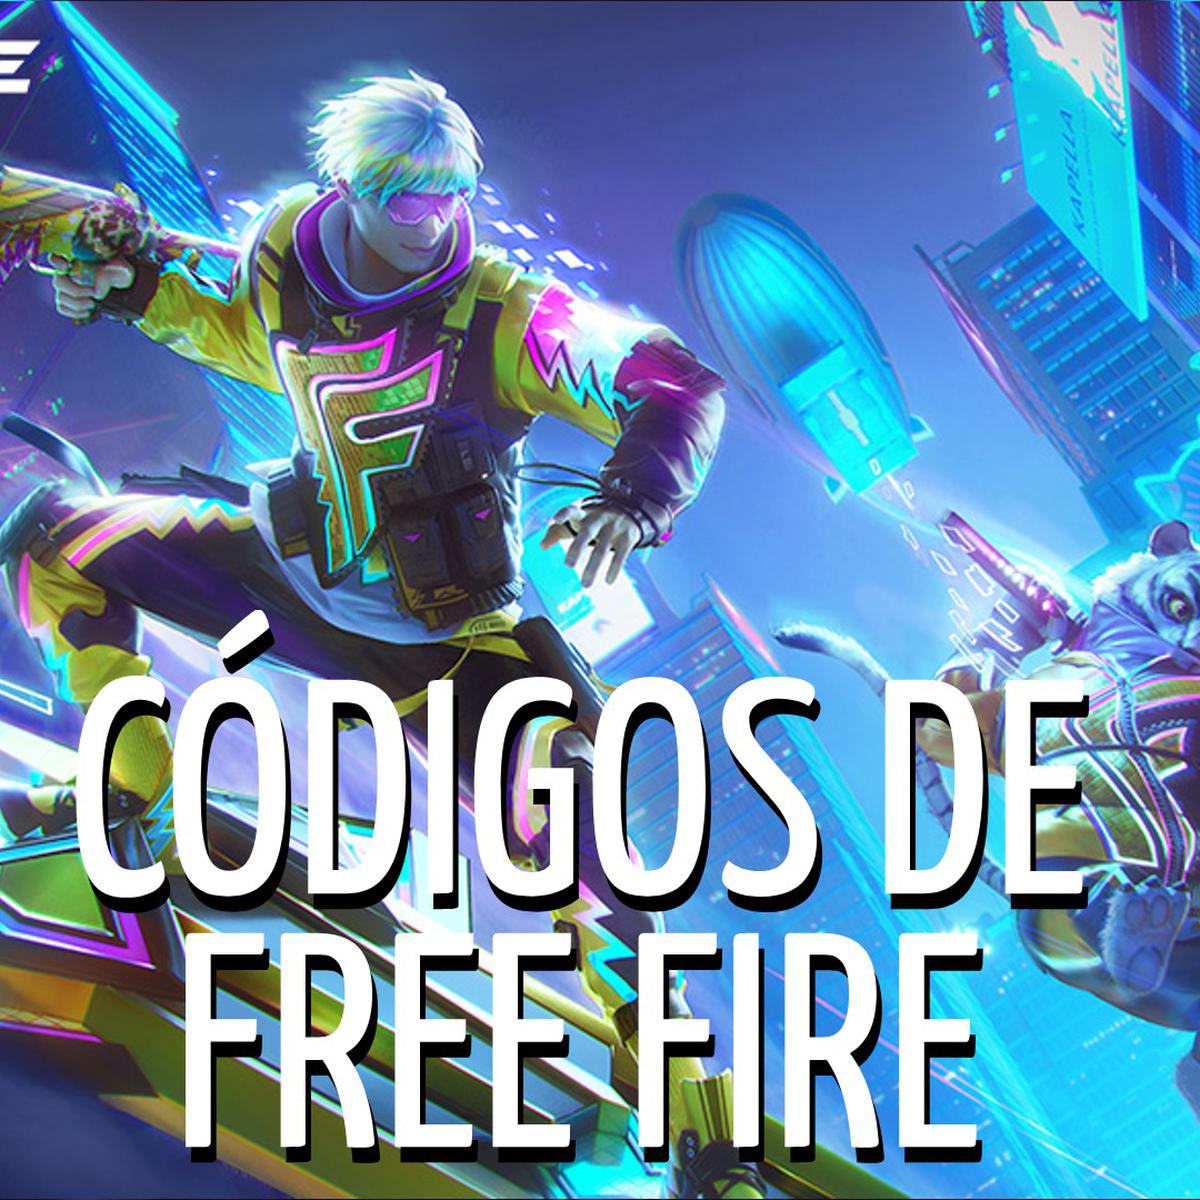 Free Fire: códigos de hoy, 30 de abril, para obtener premios, diamantes y  artículos gratis, garena, battle royale, shooter, juego celular, Videojuegos